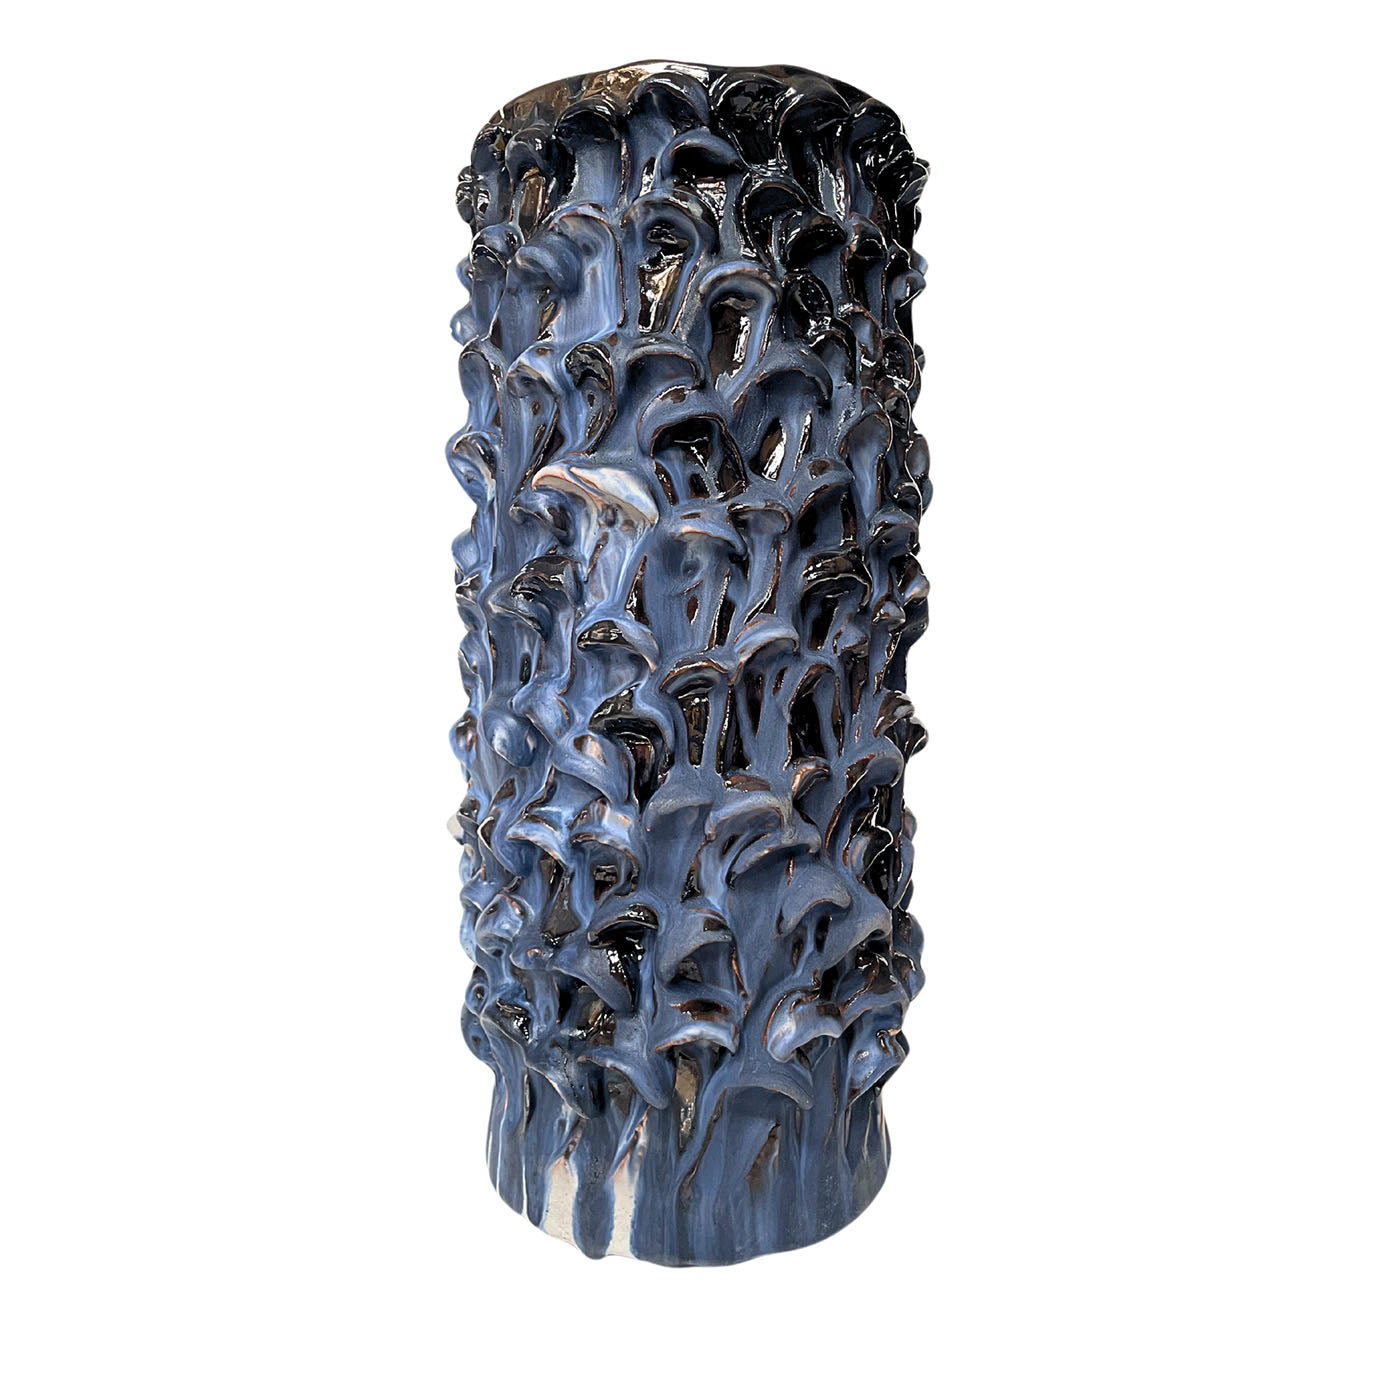 Zylindrische Vase in Blau und Schwarz - Hauptansicht